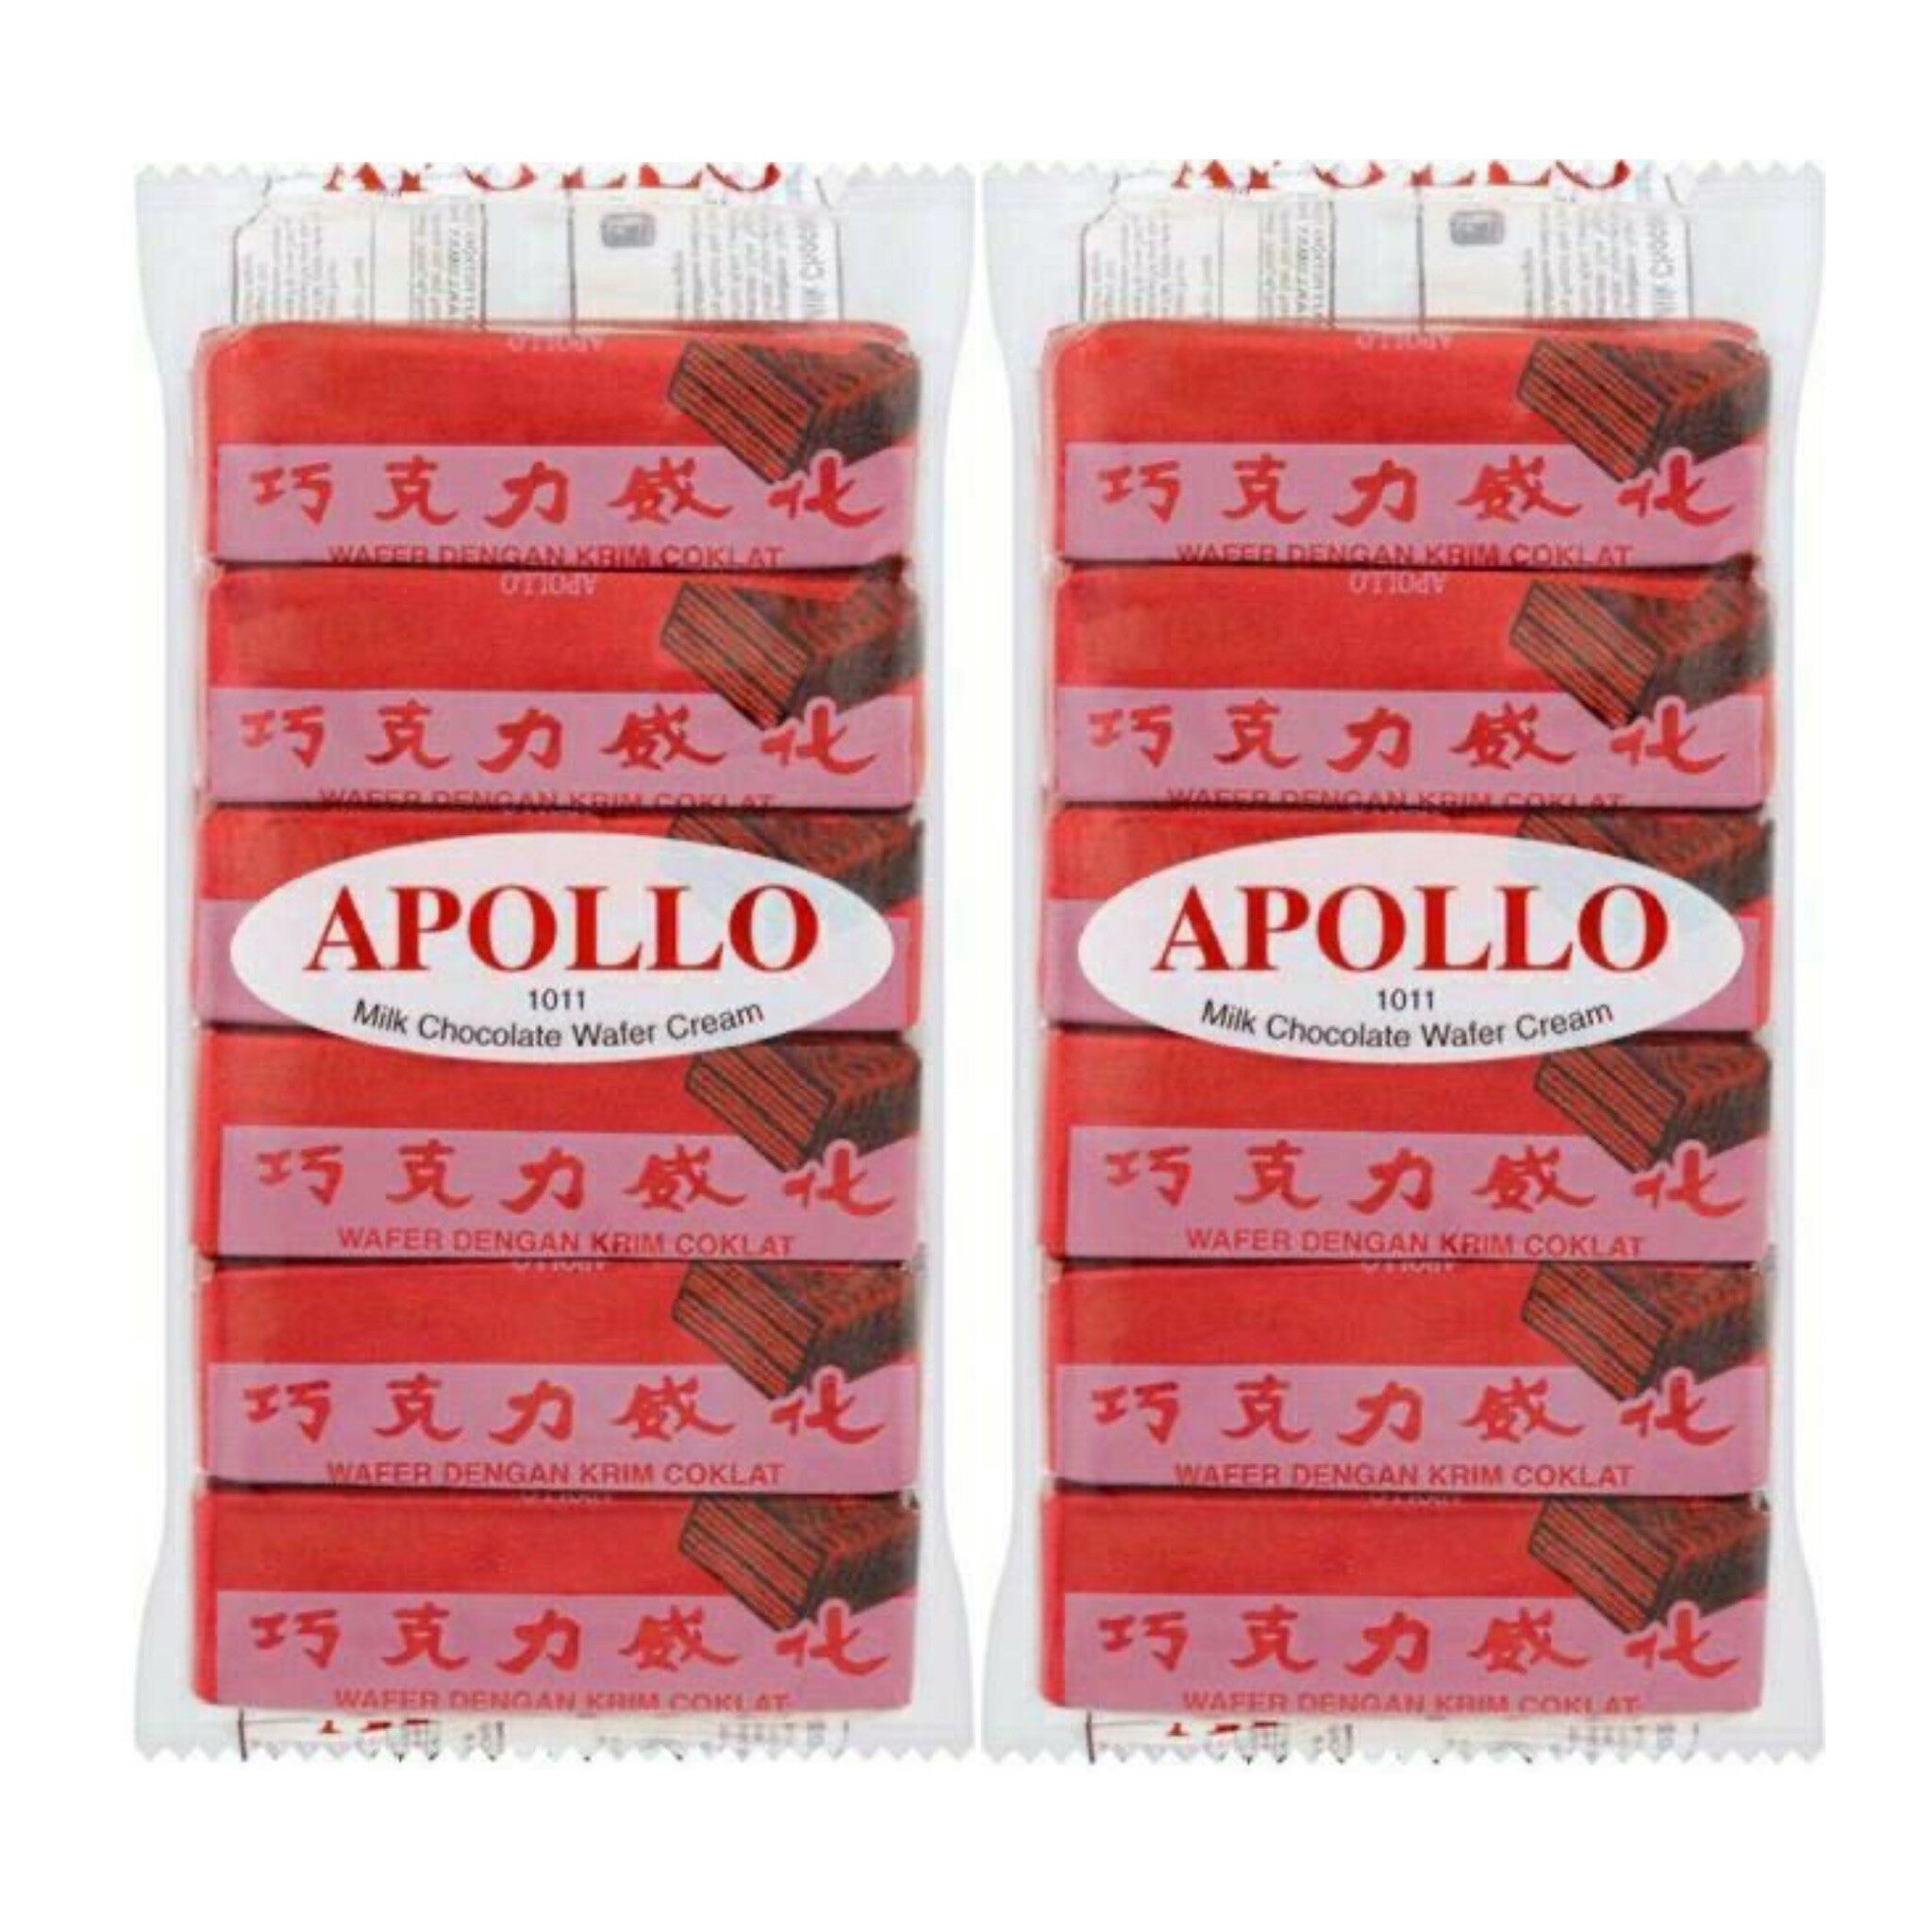 Apollo เวเฟอร์เคลือบ ช็อคโกแลต ขนาด 2 แพ็ค 24 ชิ้น